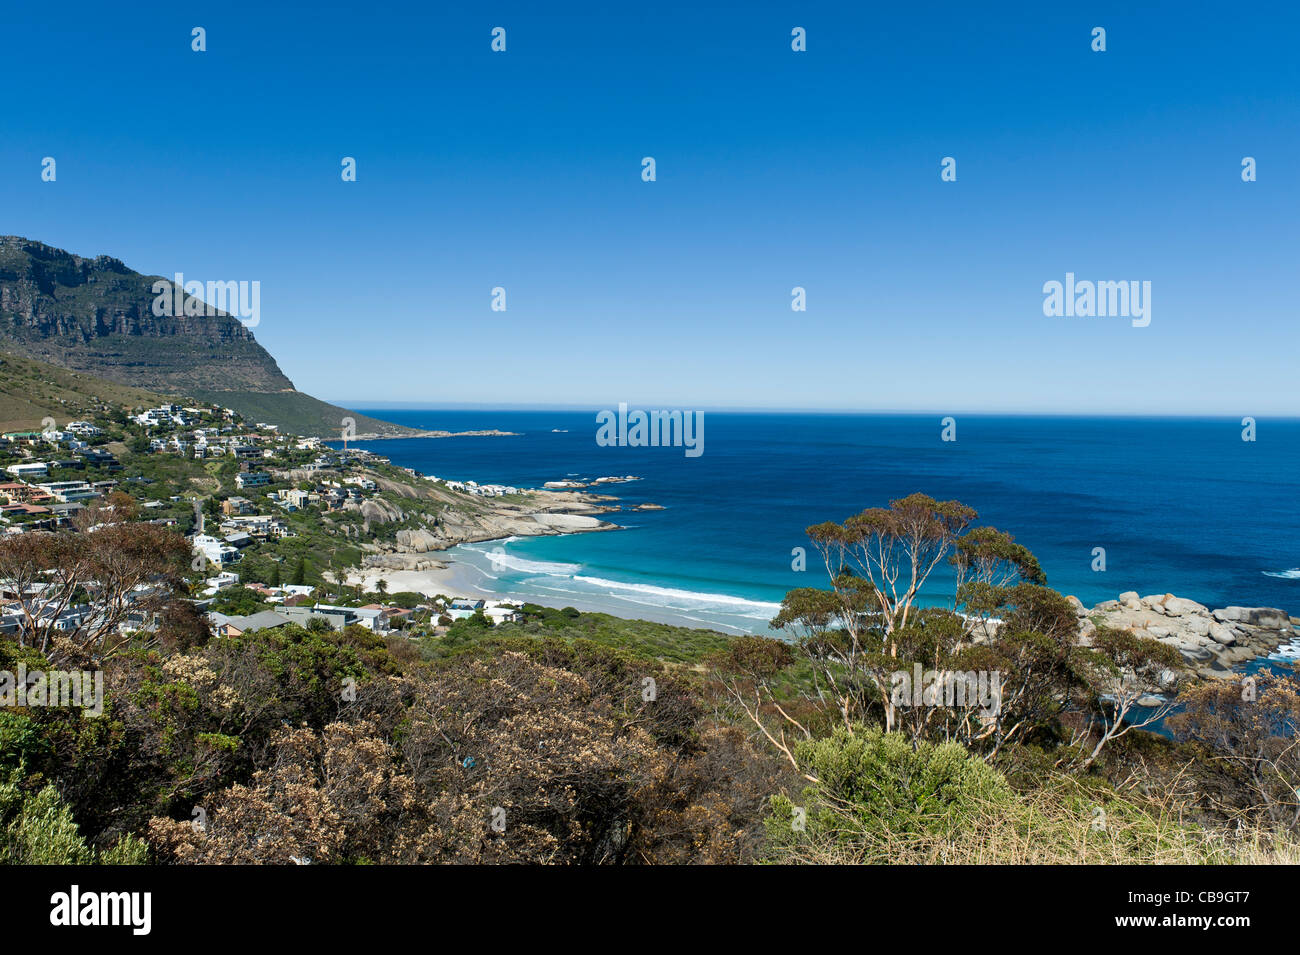 La baie de Llandudno et résidentiel au sud de Cape Town Afrique du Sud Banque D'Images